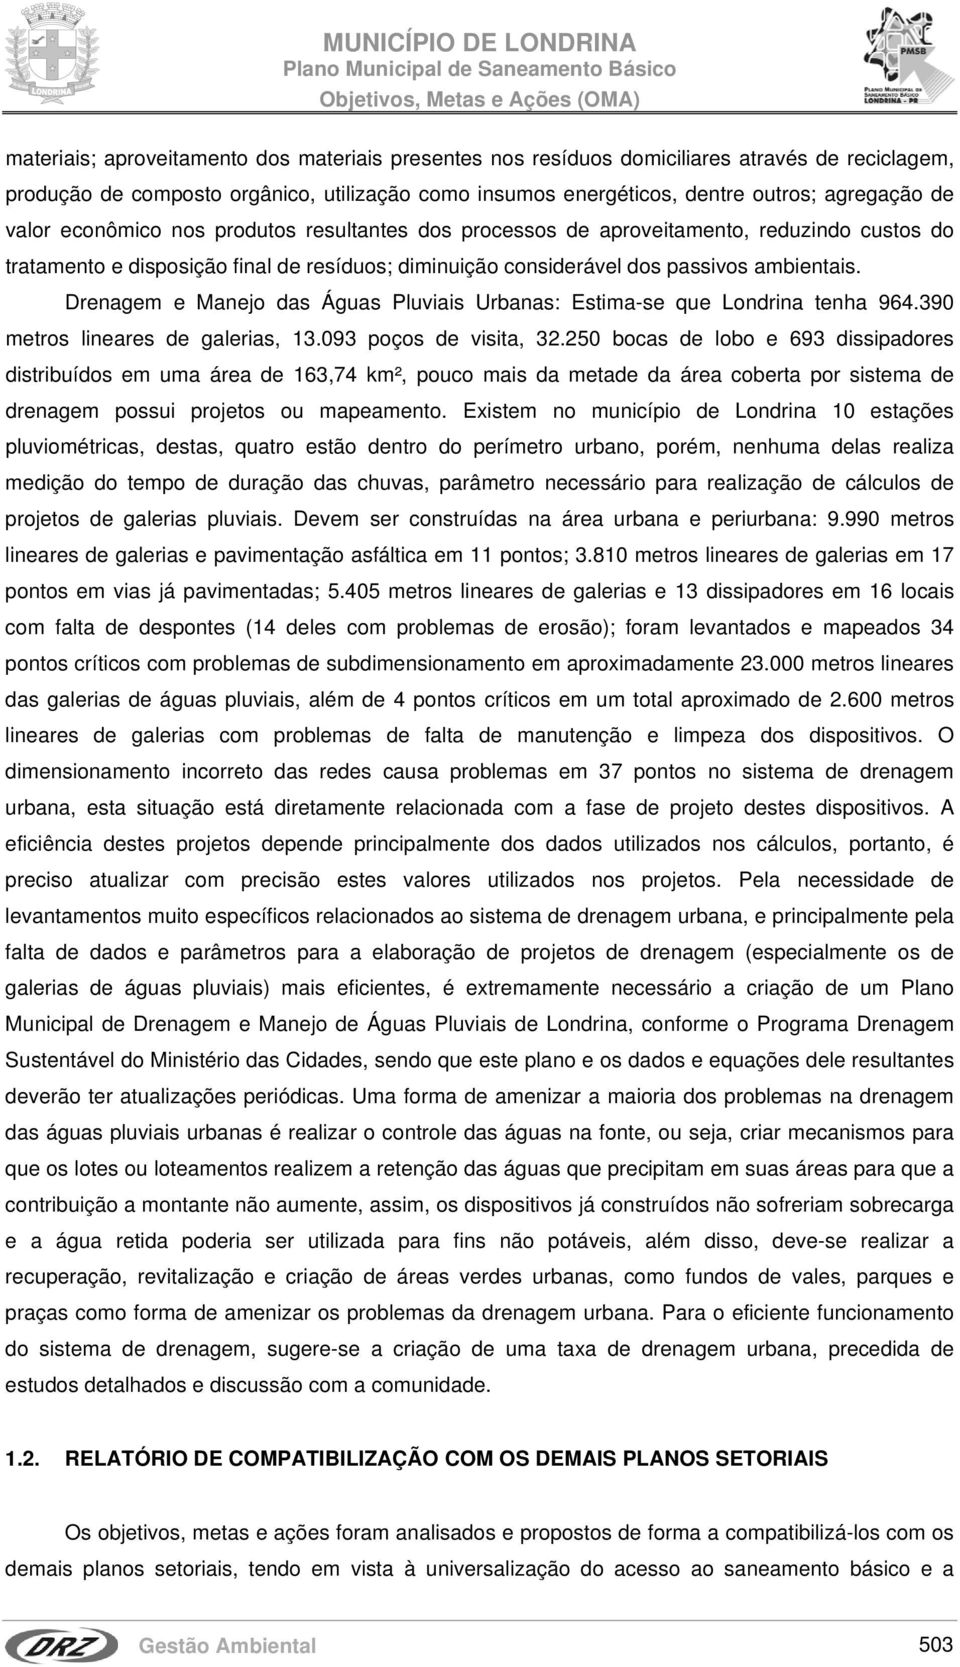 Drenagem e Manejo das Águas Pluviais Urbanas: Estima-se que Londrina tenha 964.390 metros lineares de galerias, 13.093 poços de visita, 32.